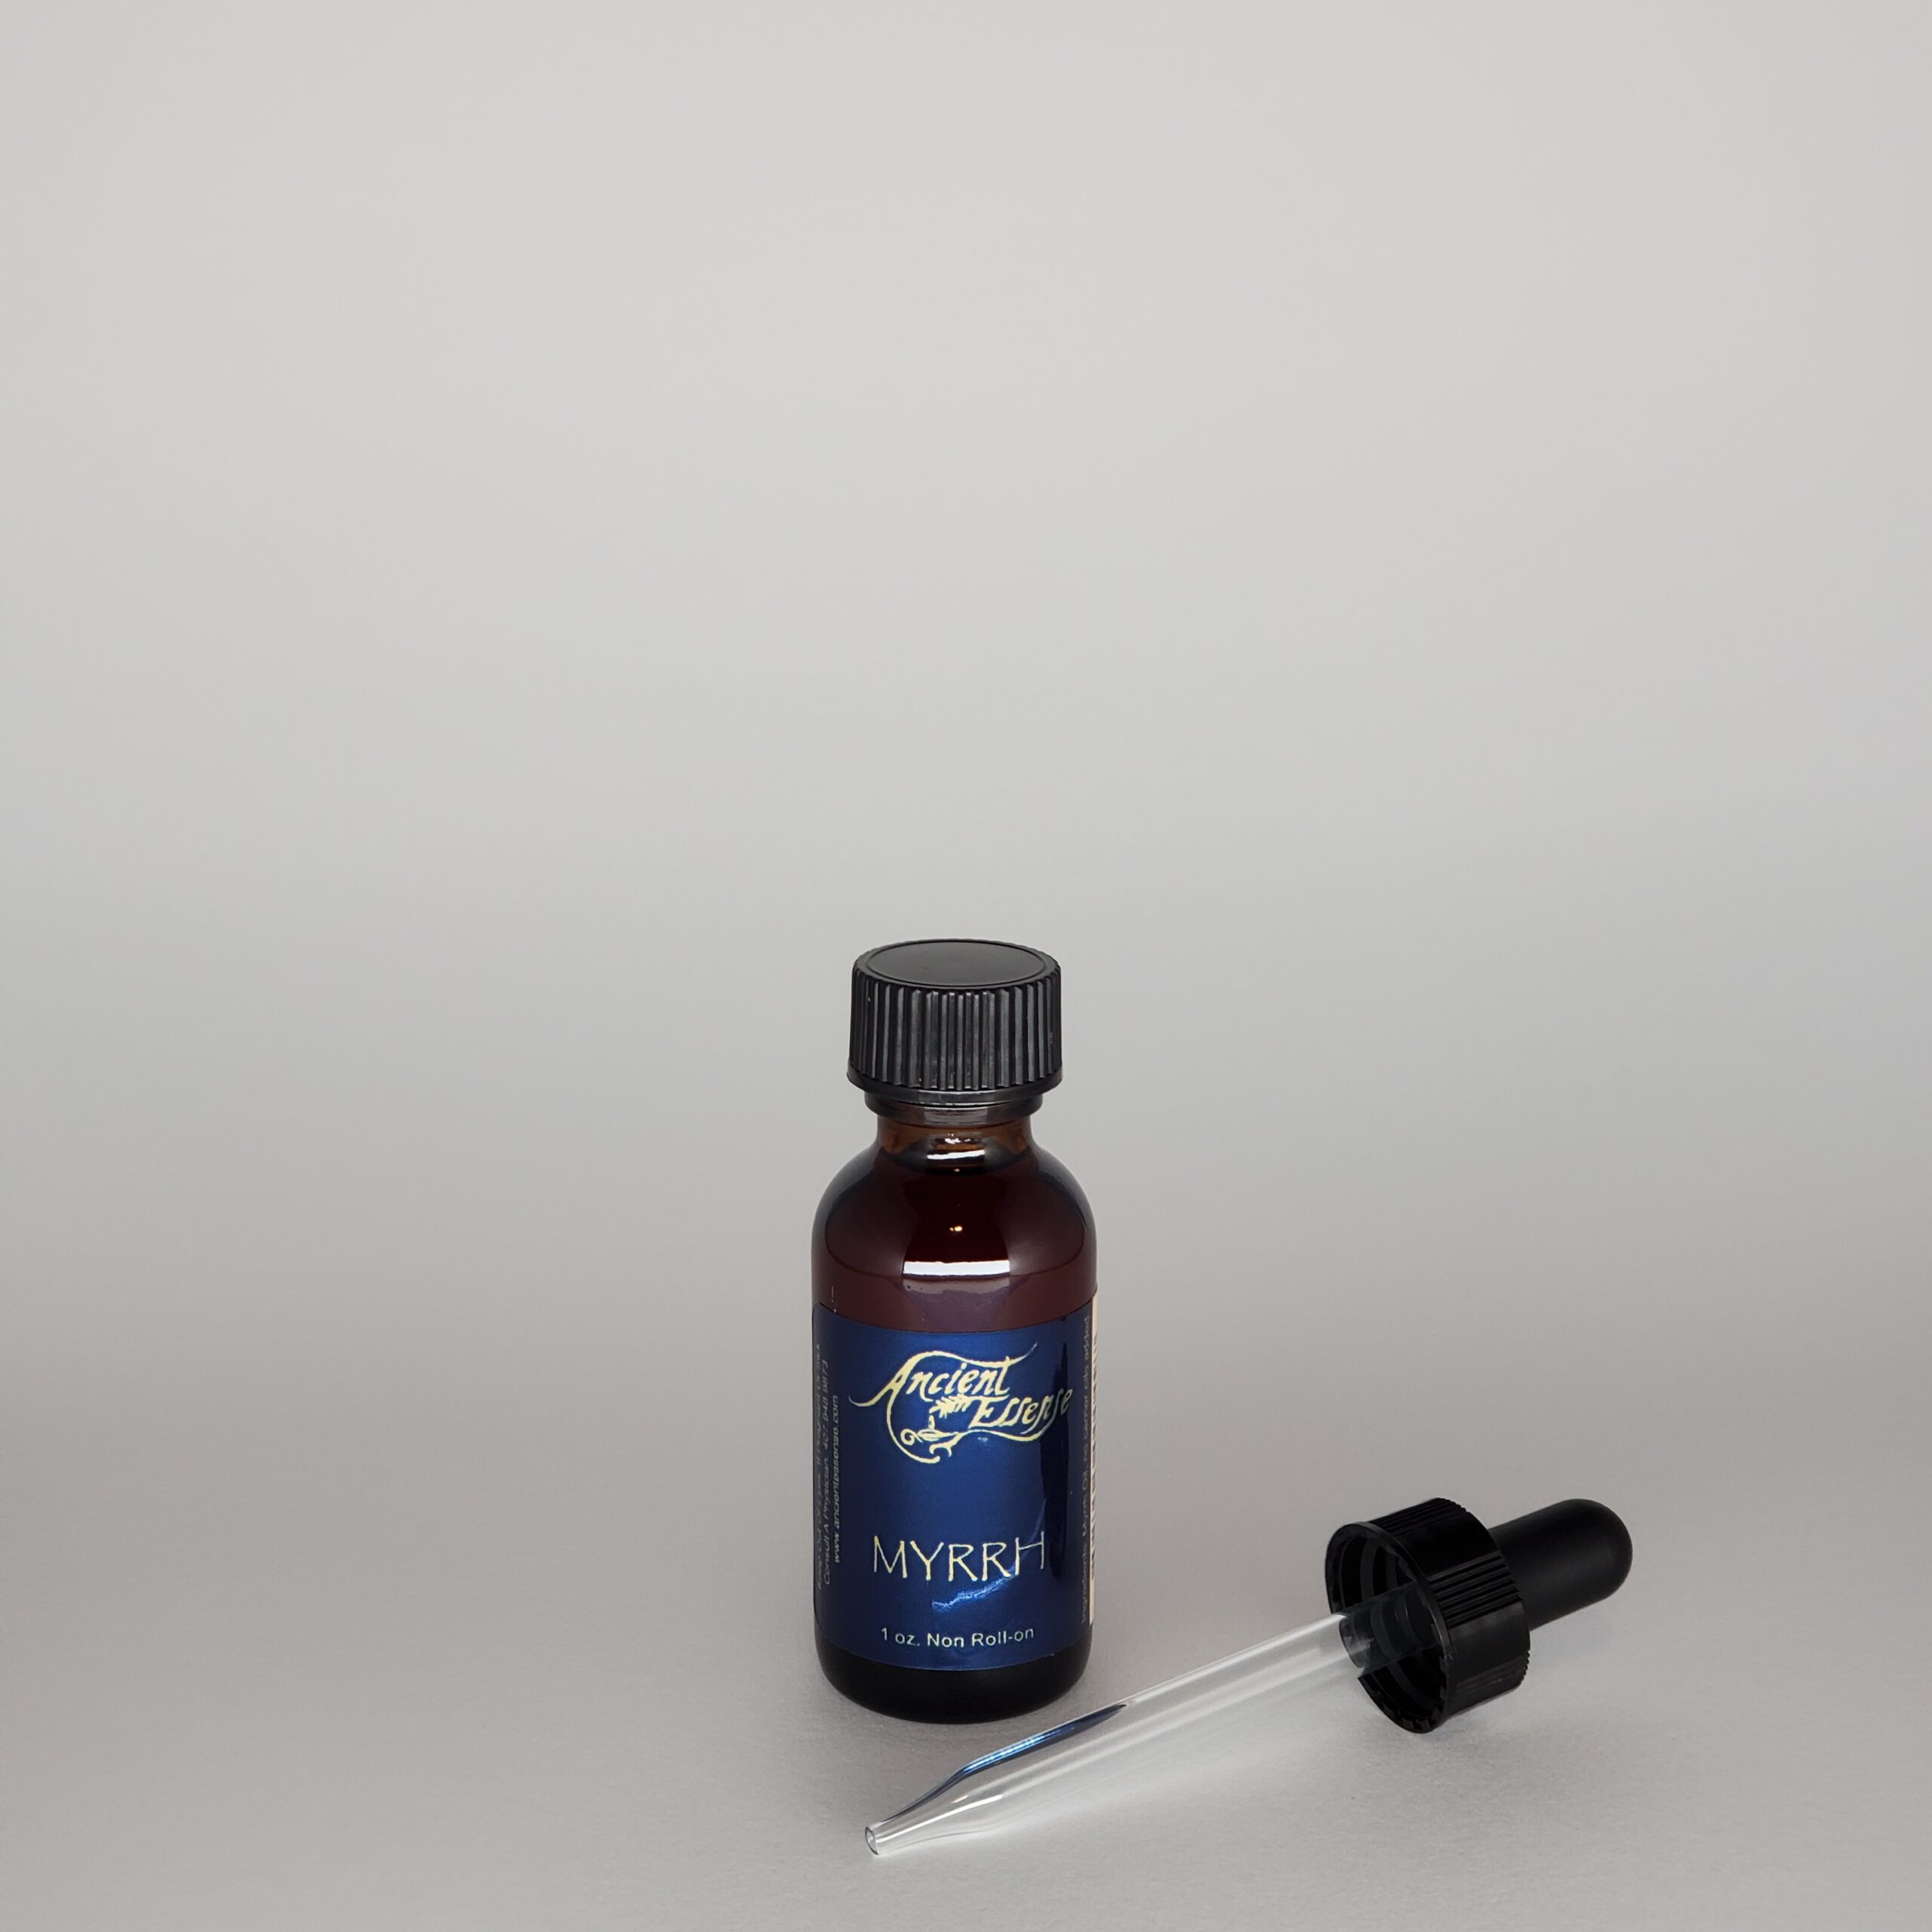 Myrrh Oil For Health and Beauty - Ancient Essence